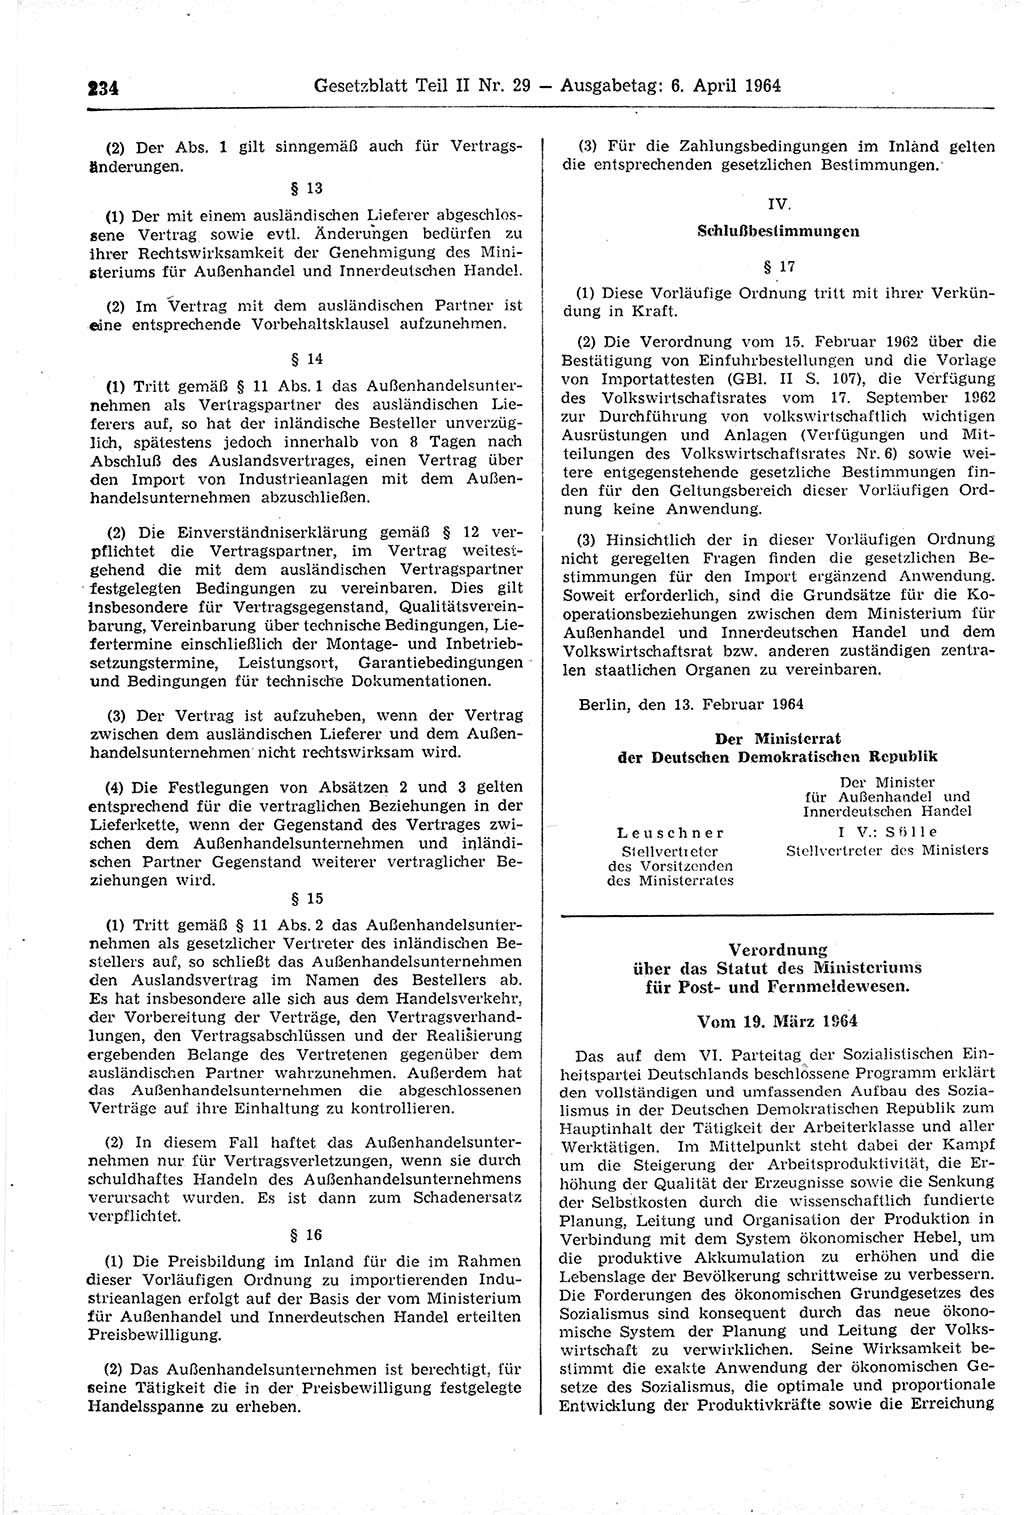 Gesetzblatt (GBl.) der Deutschen Demokratischen Republik (DDR) Teil ⅠⅠ 1964, Seite 234 (GBl. DDR ⅠⅠ 1964, S. 234)